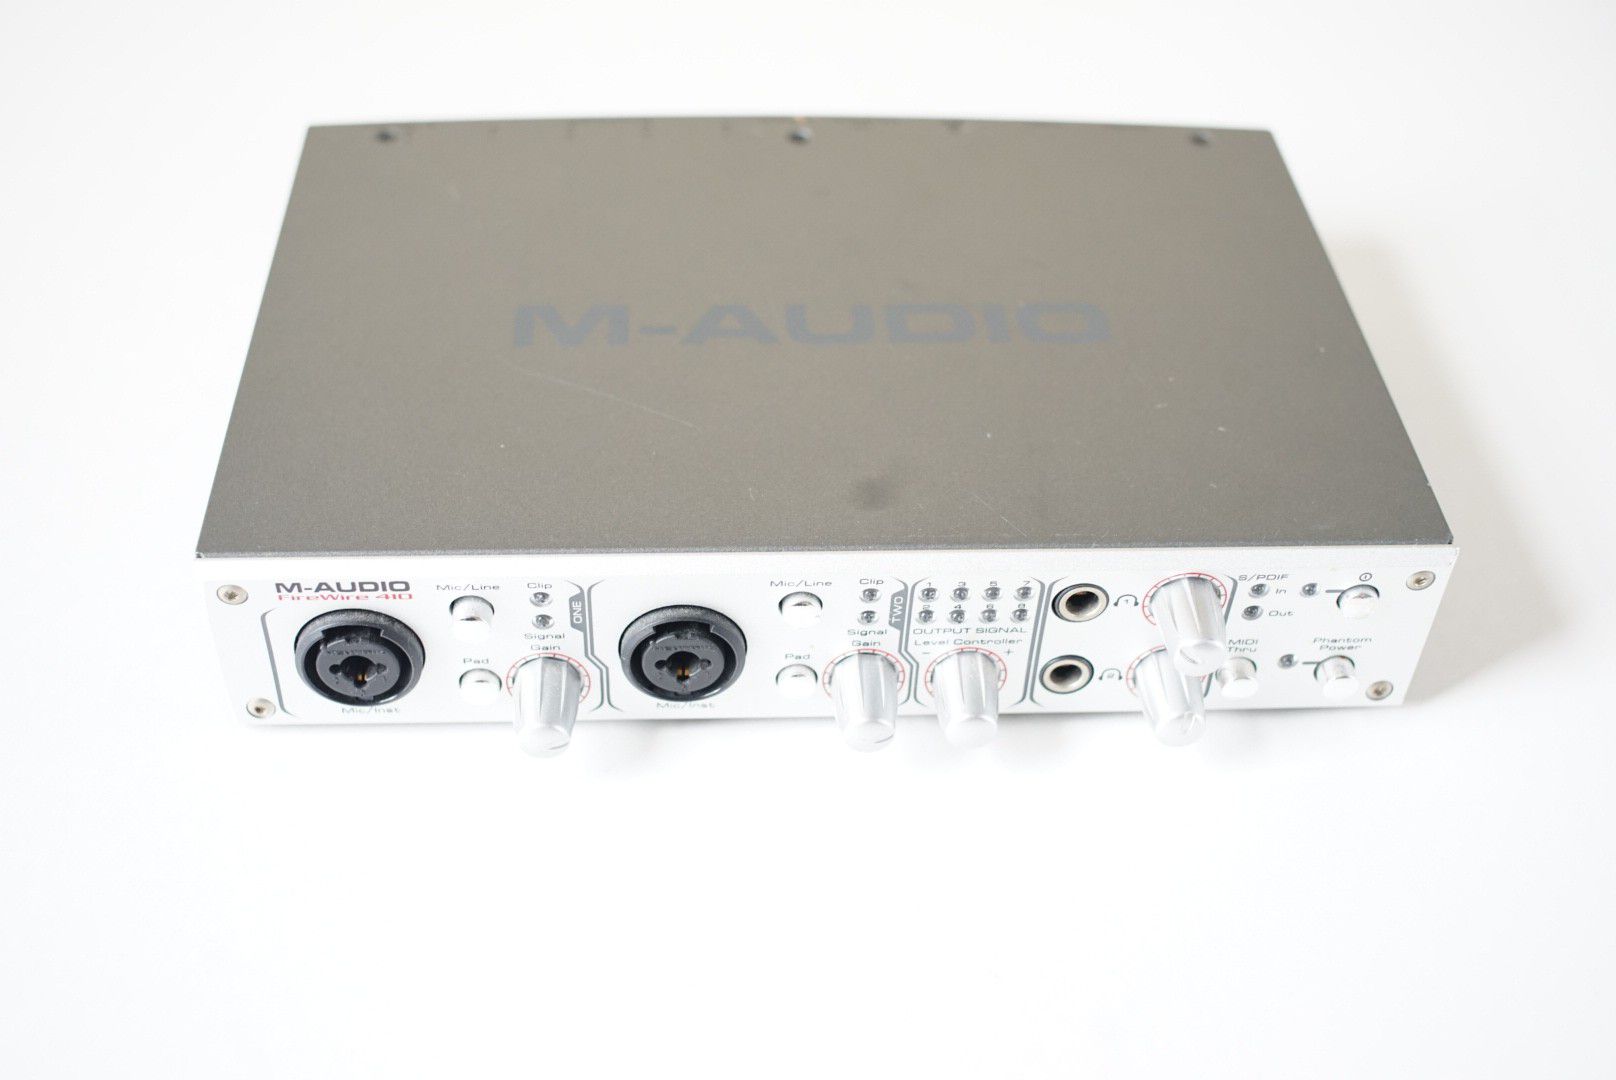 M-Audio FireWire 410 Recording Interface